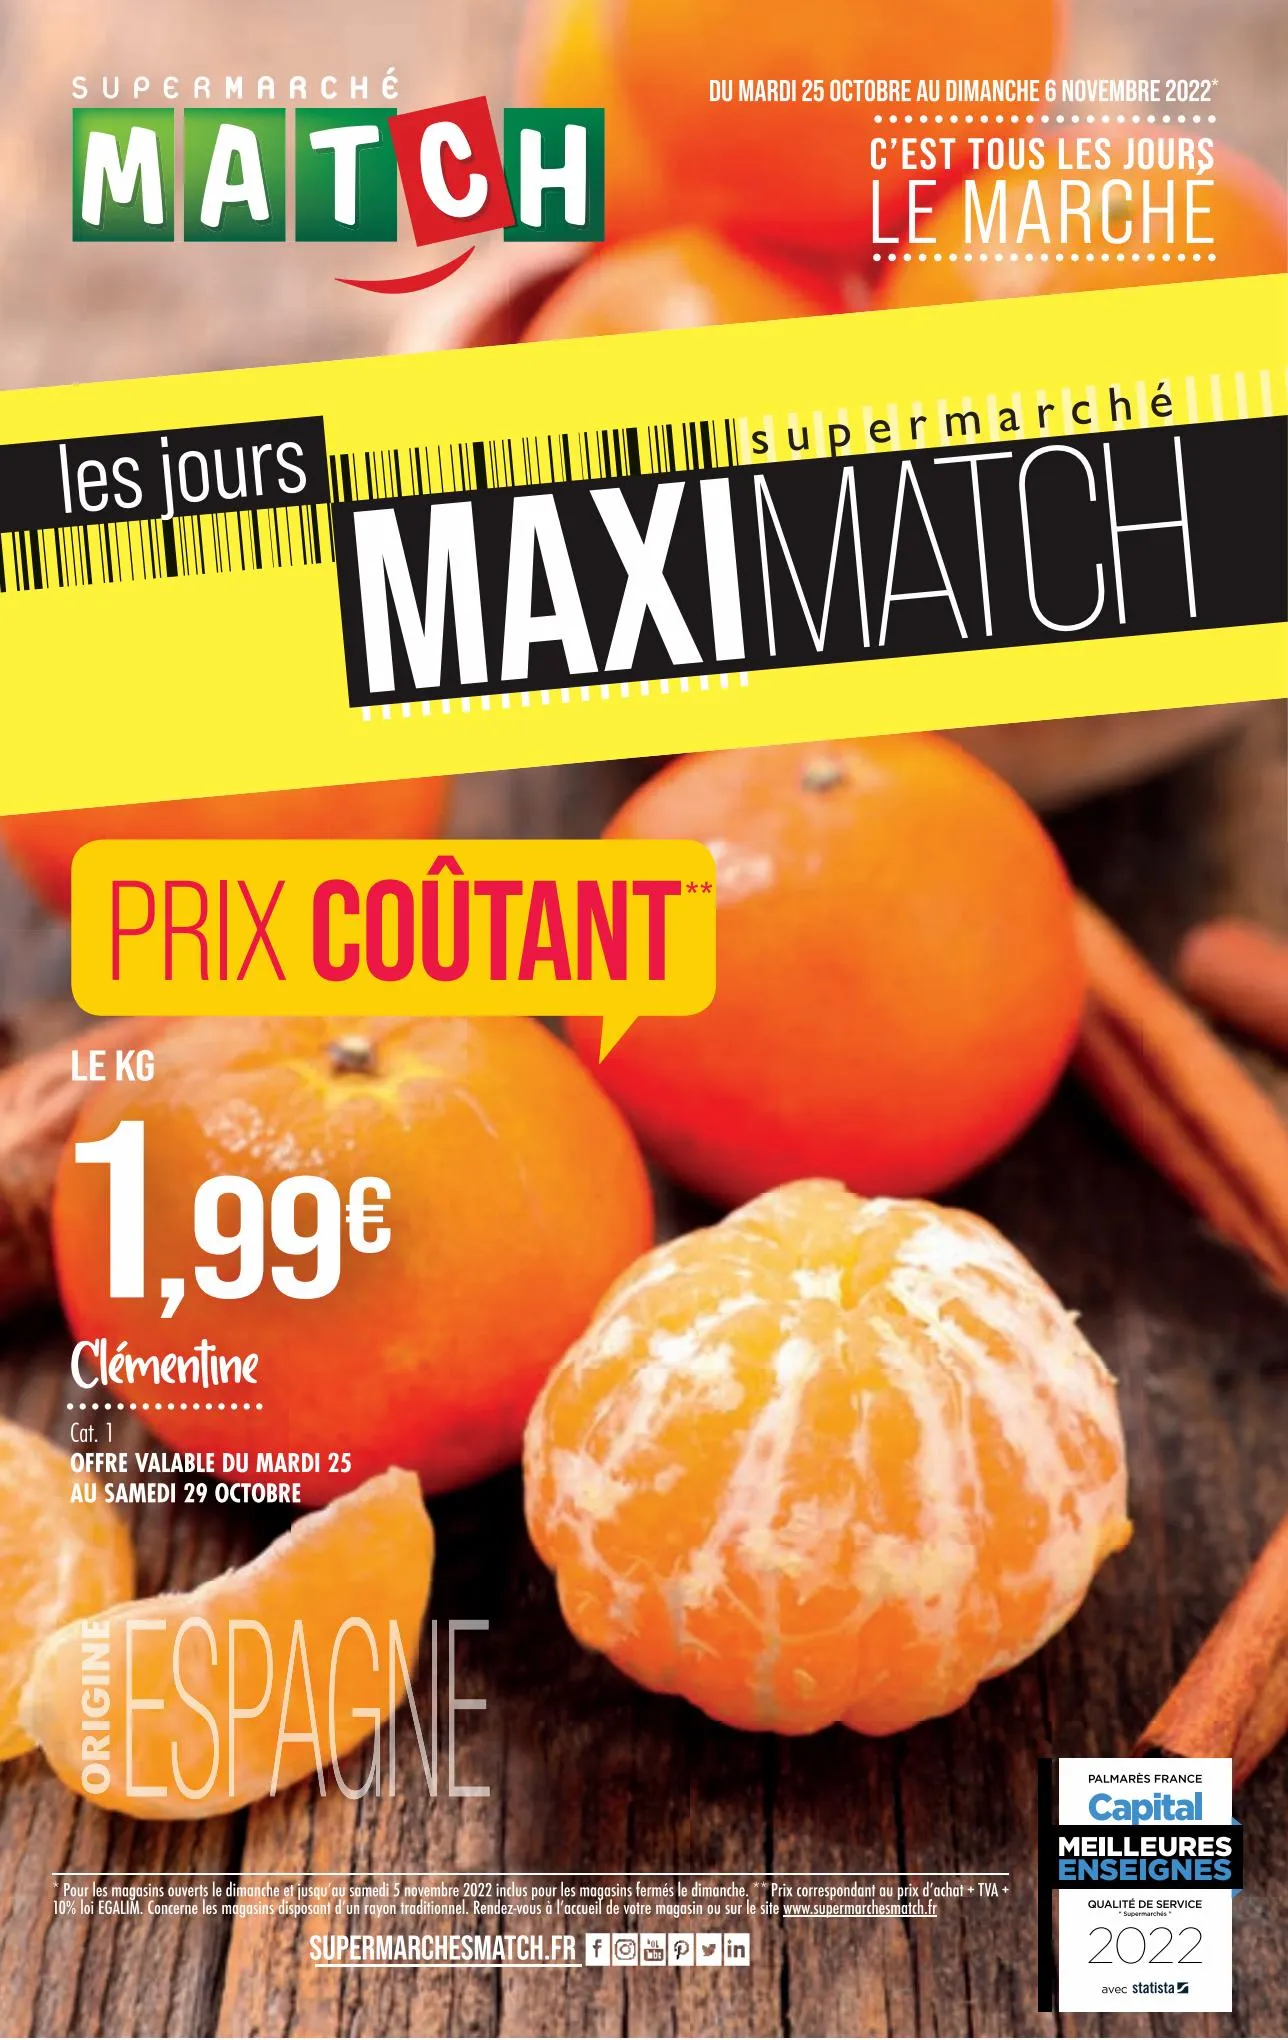 Catalogue Les jours Maximatch, page 00001